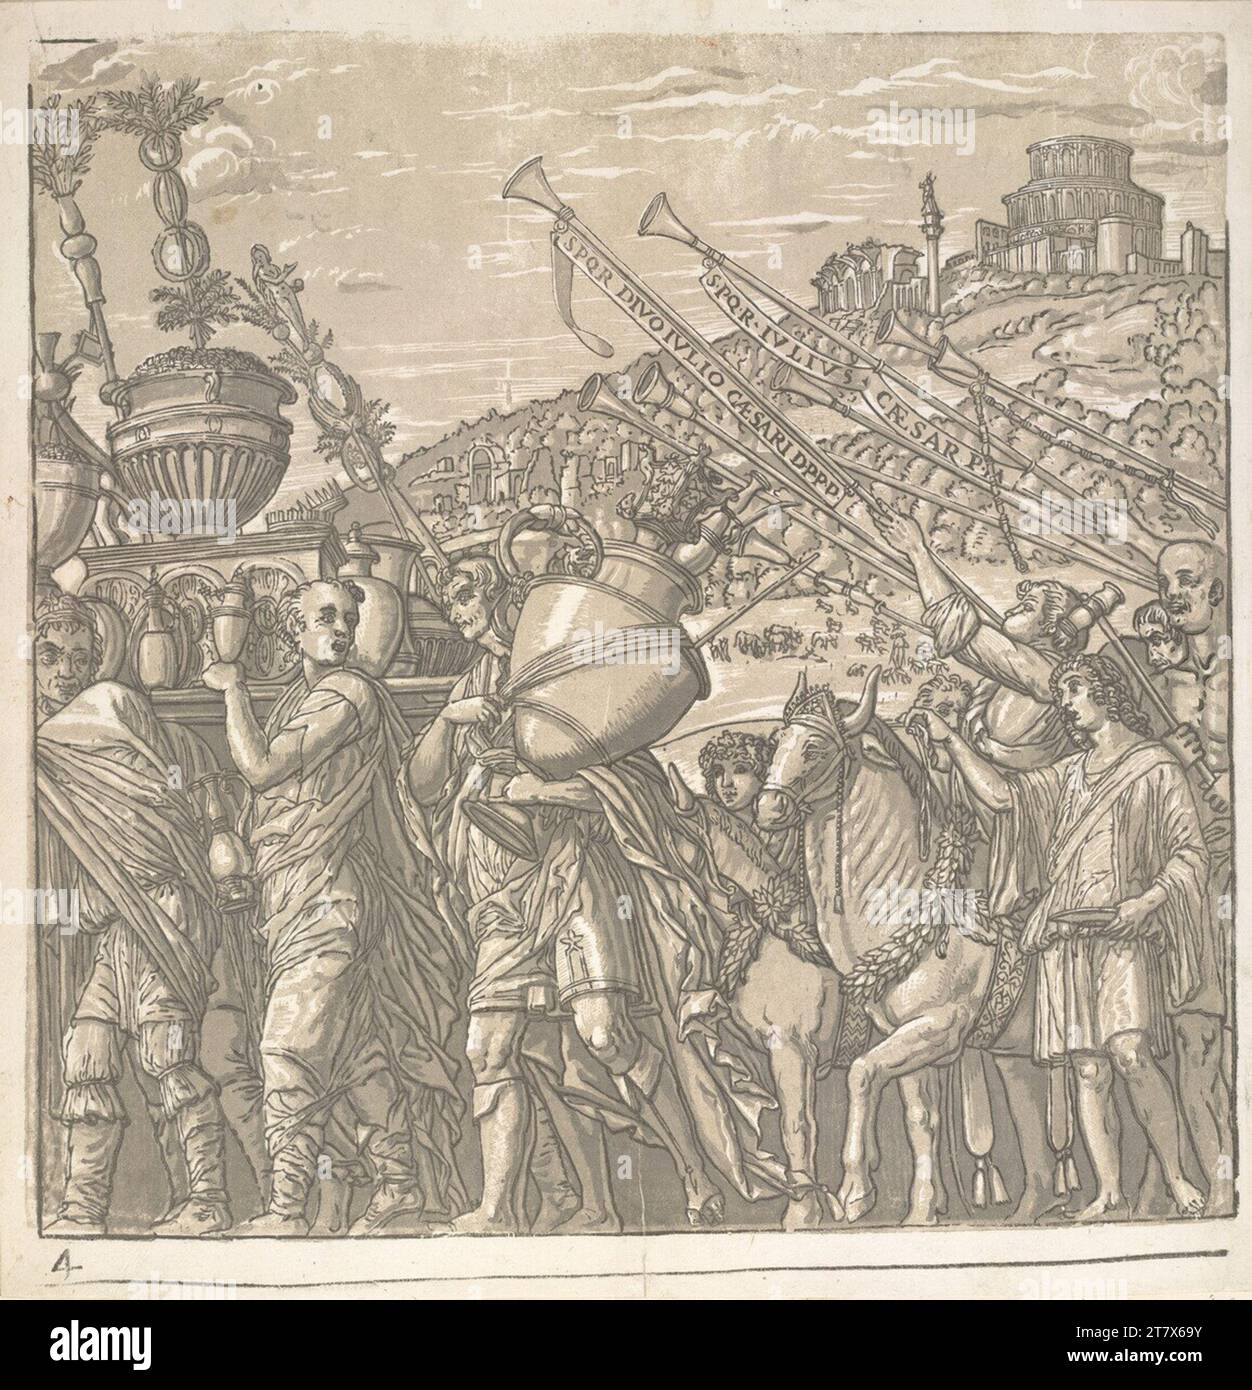 Andrea Andreani le triomphe de Jules César : Blatt 4. Clair OBSCUR gravure sur bois de quatre plaques 1599, 1599 Banque D'Images